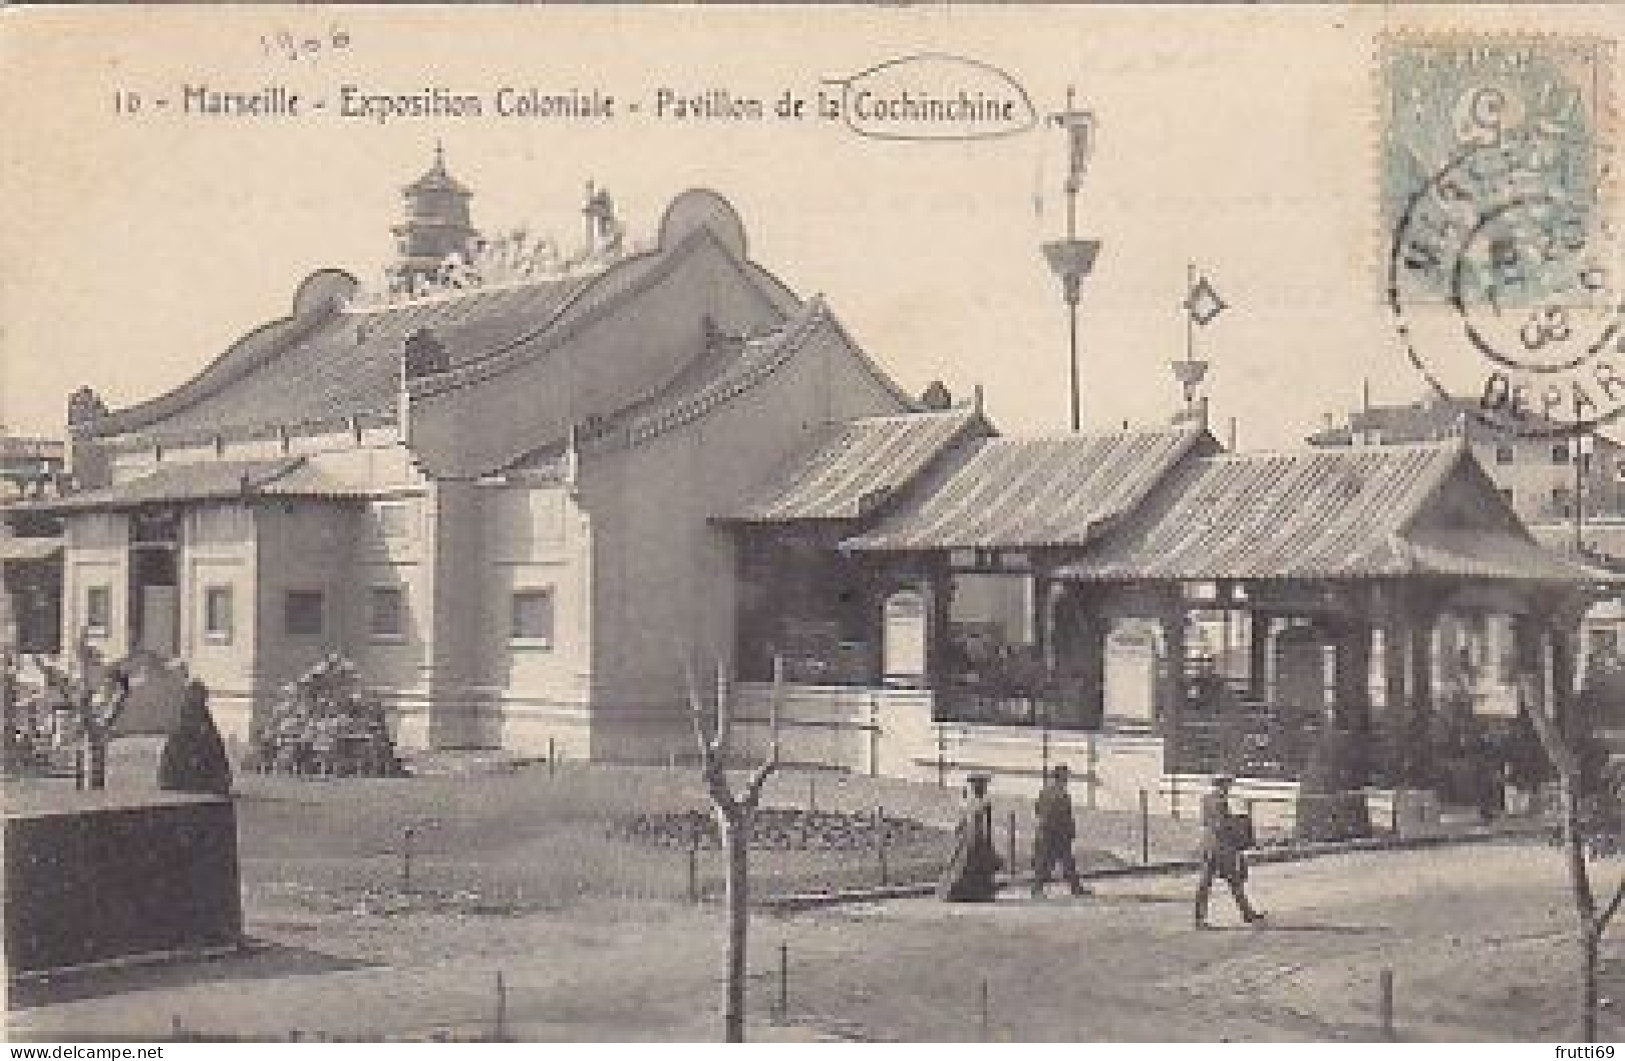 AK 216699 FRANCE - Marseille - Expoition Coloniale - Pavilion De Ls Cochinchine - Kolonialausstellungen 1906 - 1922